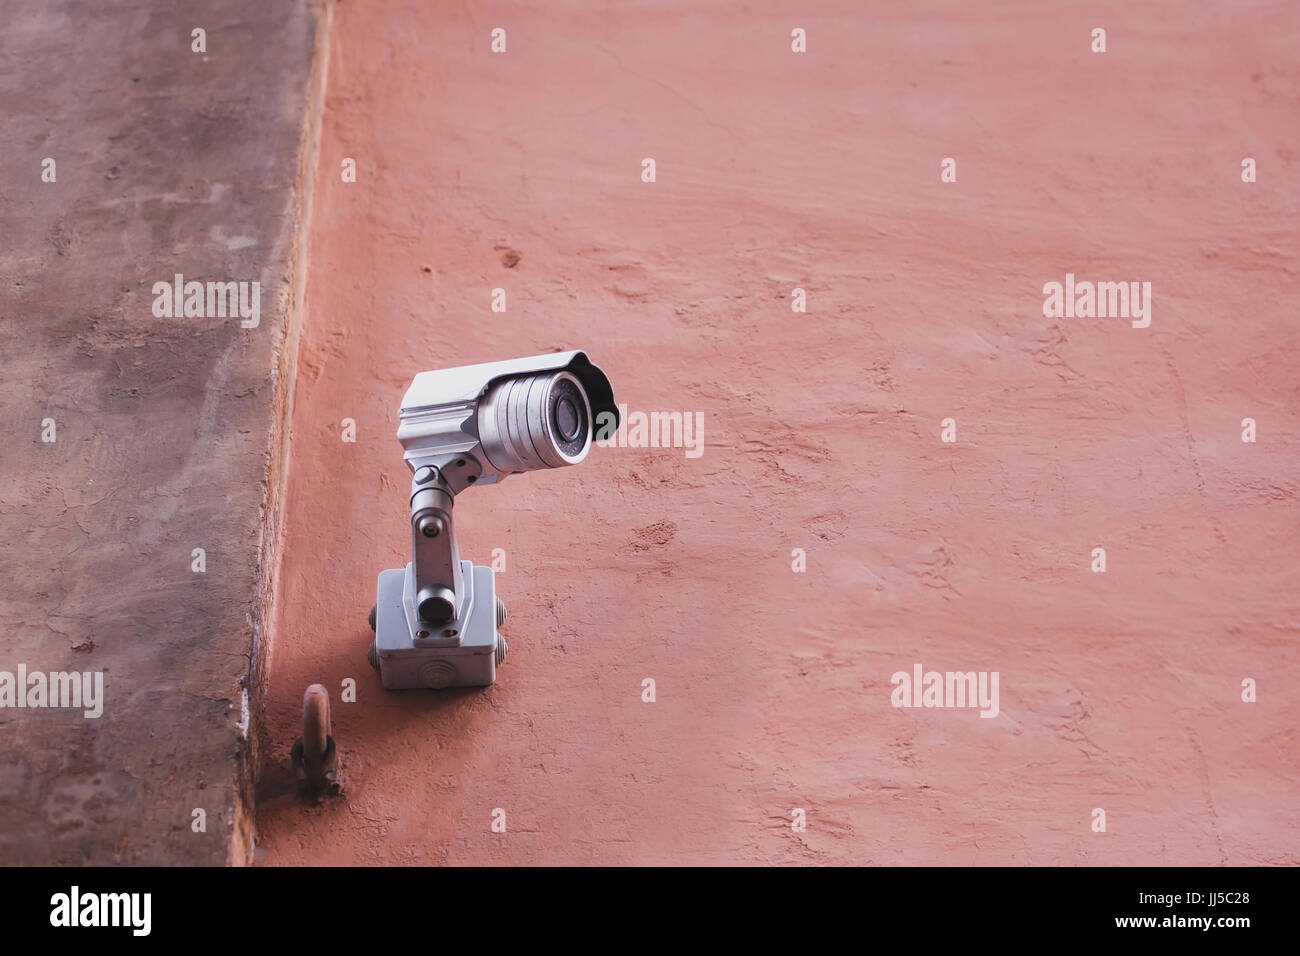 Outdoor una telecamera di sicurezza per la sorveglianza Foto Stock